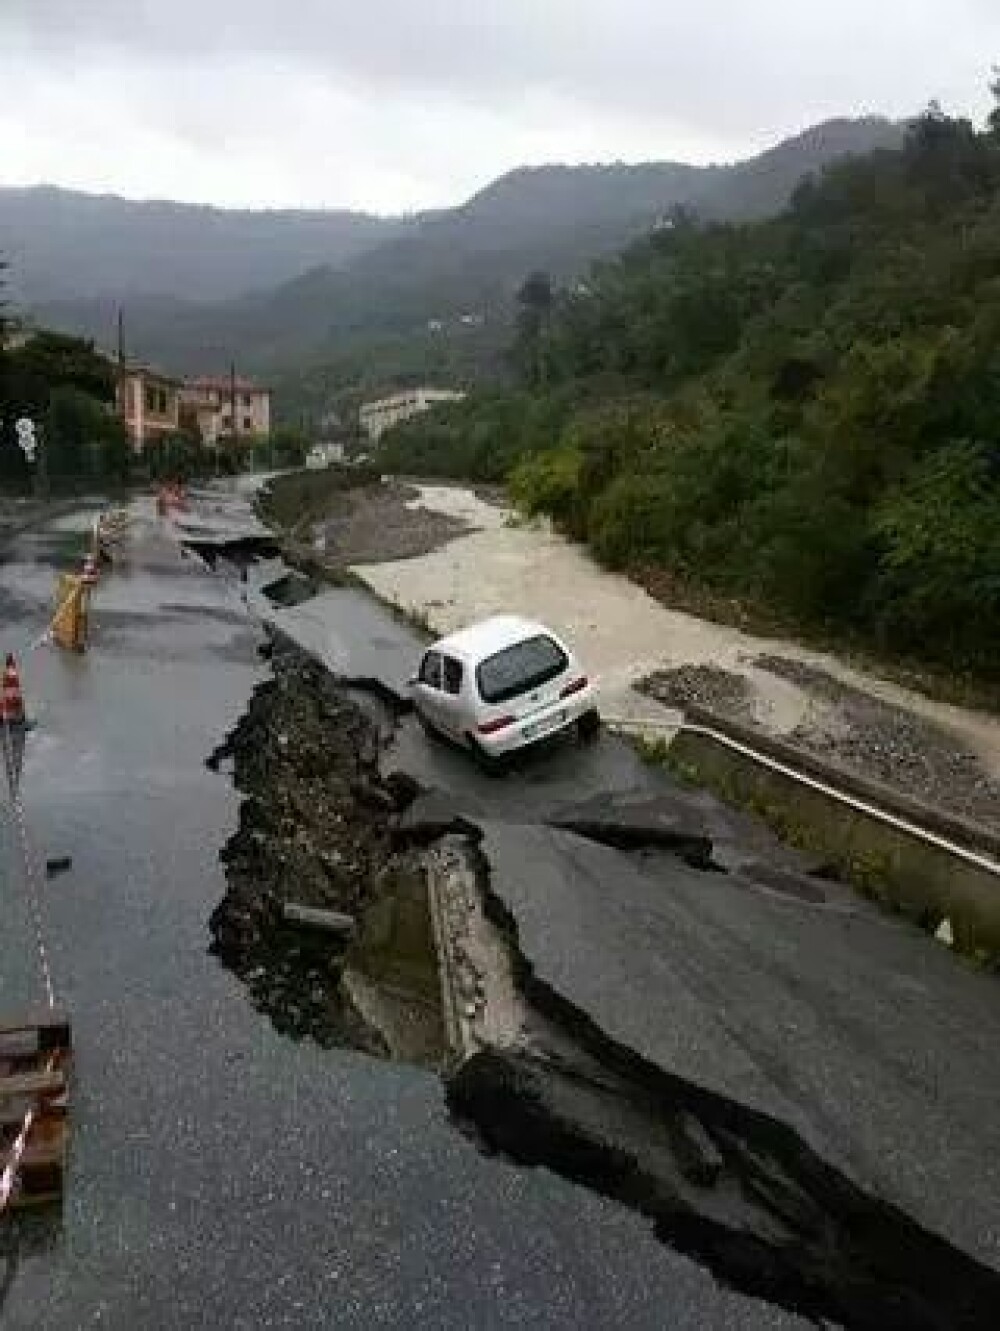 Inundatii catastrofale in orasul Genova. O persoana a murit, iar apartamentul unor romani a fost distrus. GALERIE FOTO - Imaginea 5